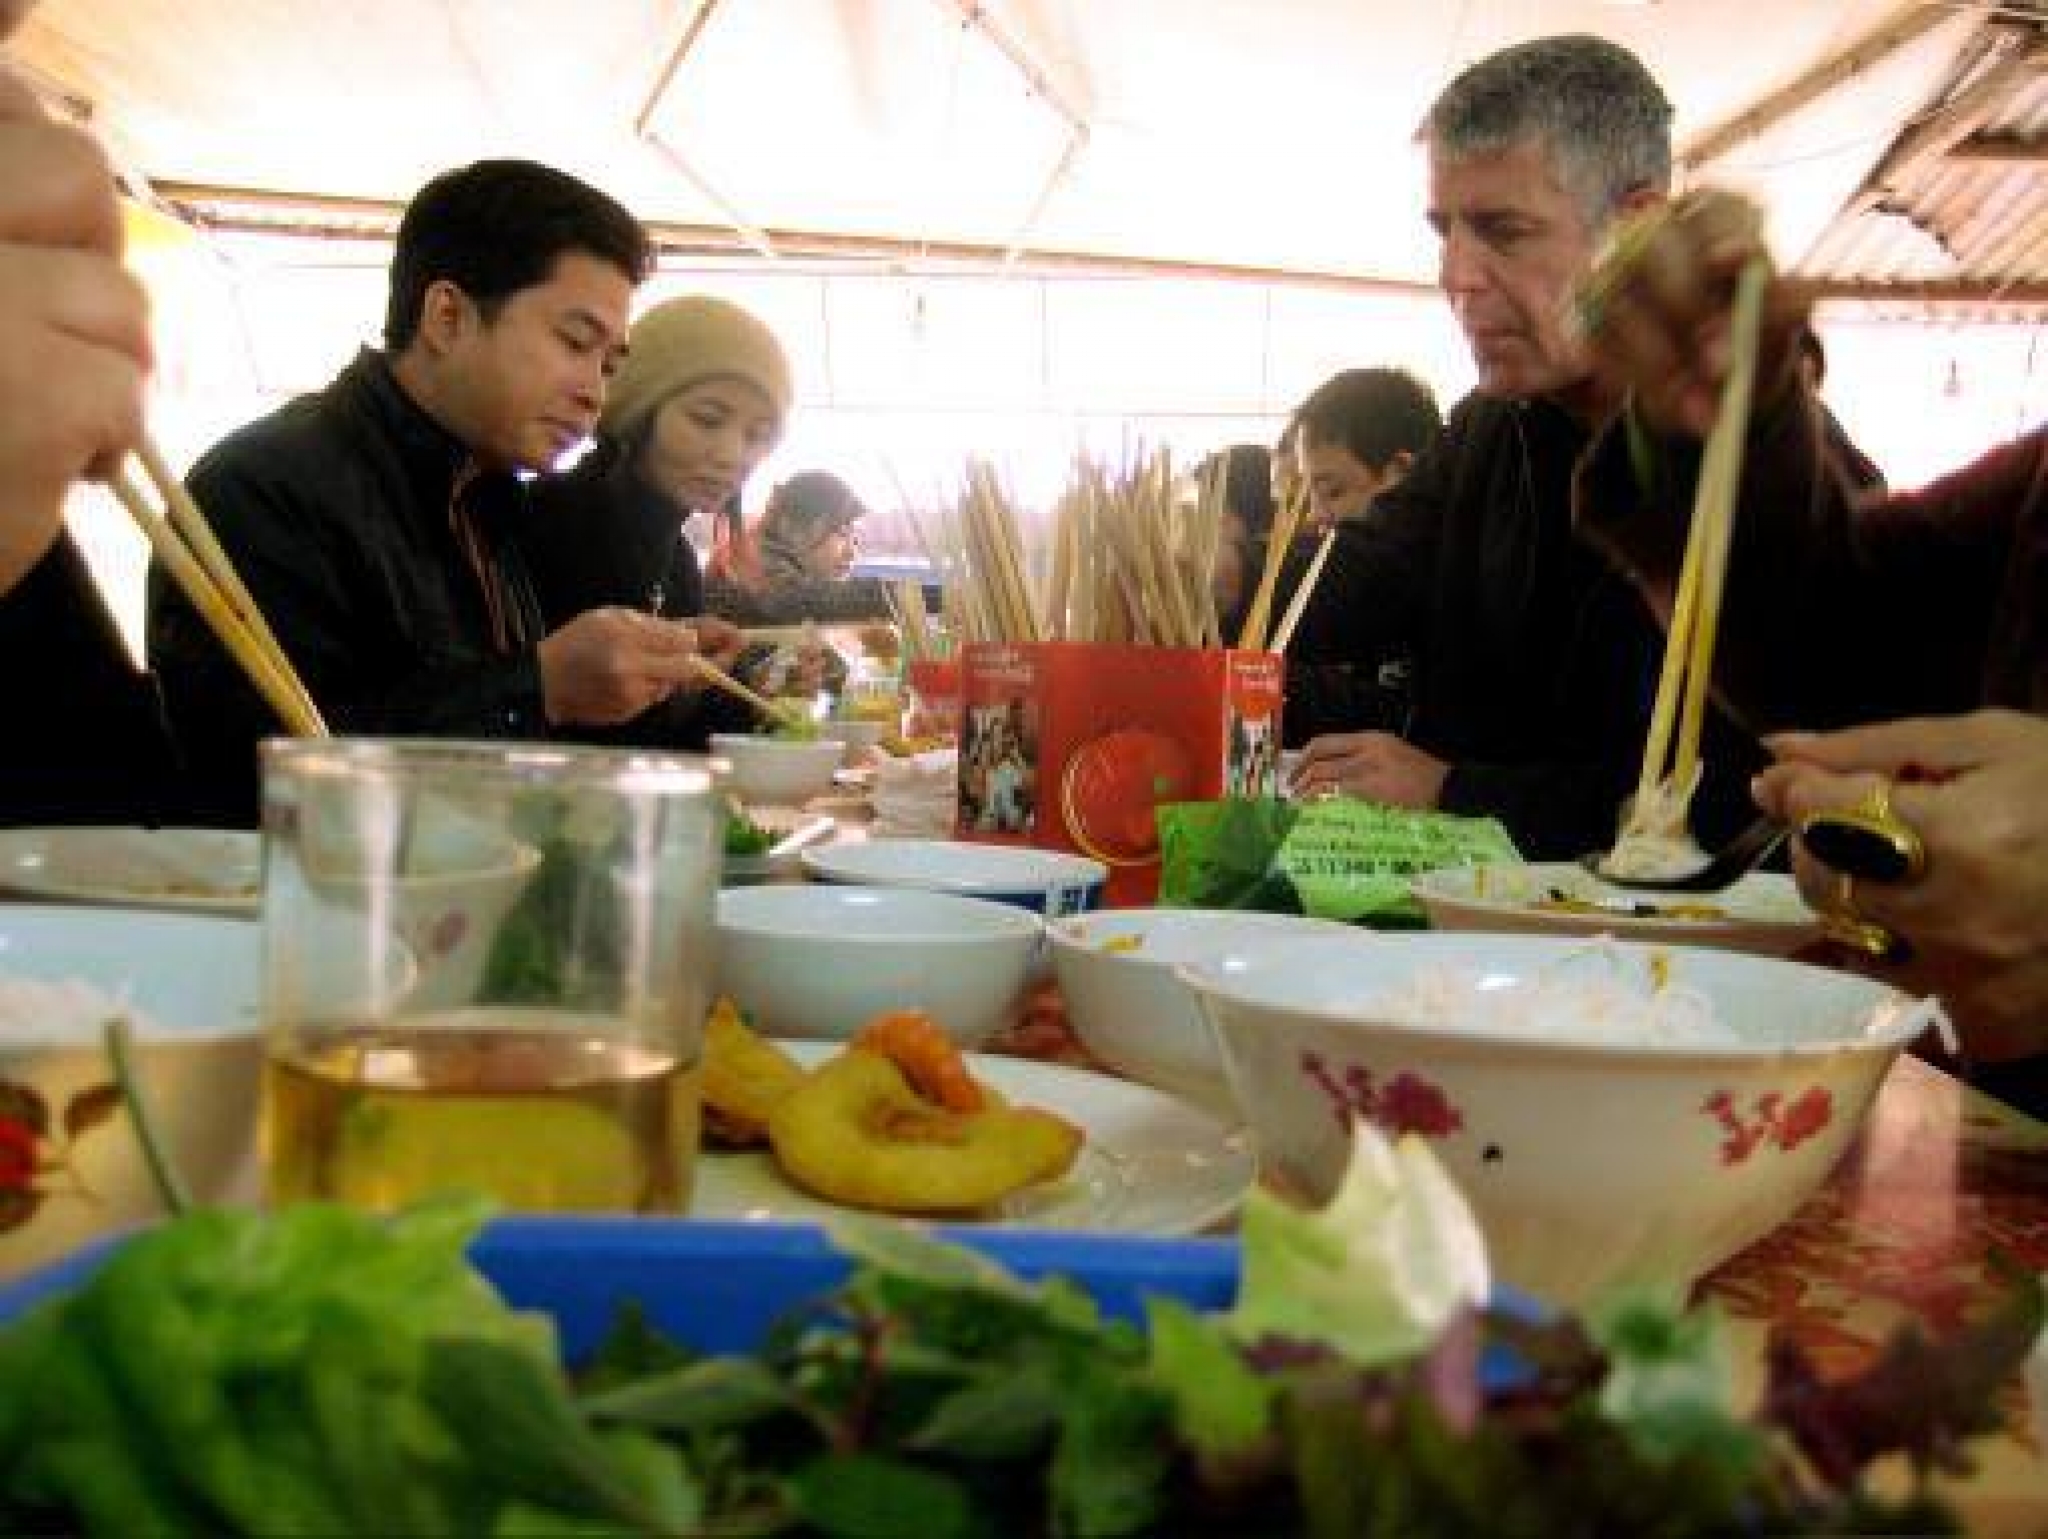 Tổng thống Obama ăn bún chả: Ngạc nhiên chưa? Chỉ trong một bữa ăn trưa tại Hà Nội, Tổng thống Obama đã đắm say trong hương vị bún chả đặc trưng của Việt Nam. Hãy xem bức ảnh độc đáo này để cảm nhận niềm đam mê ẩm thực của ngài.